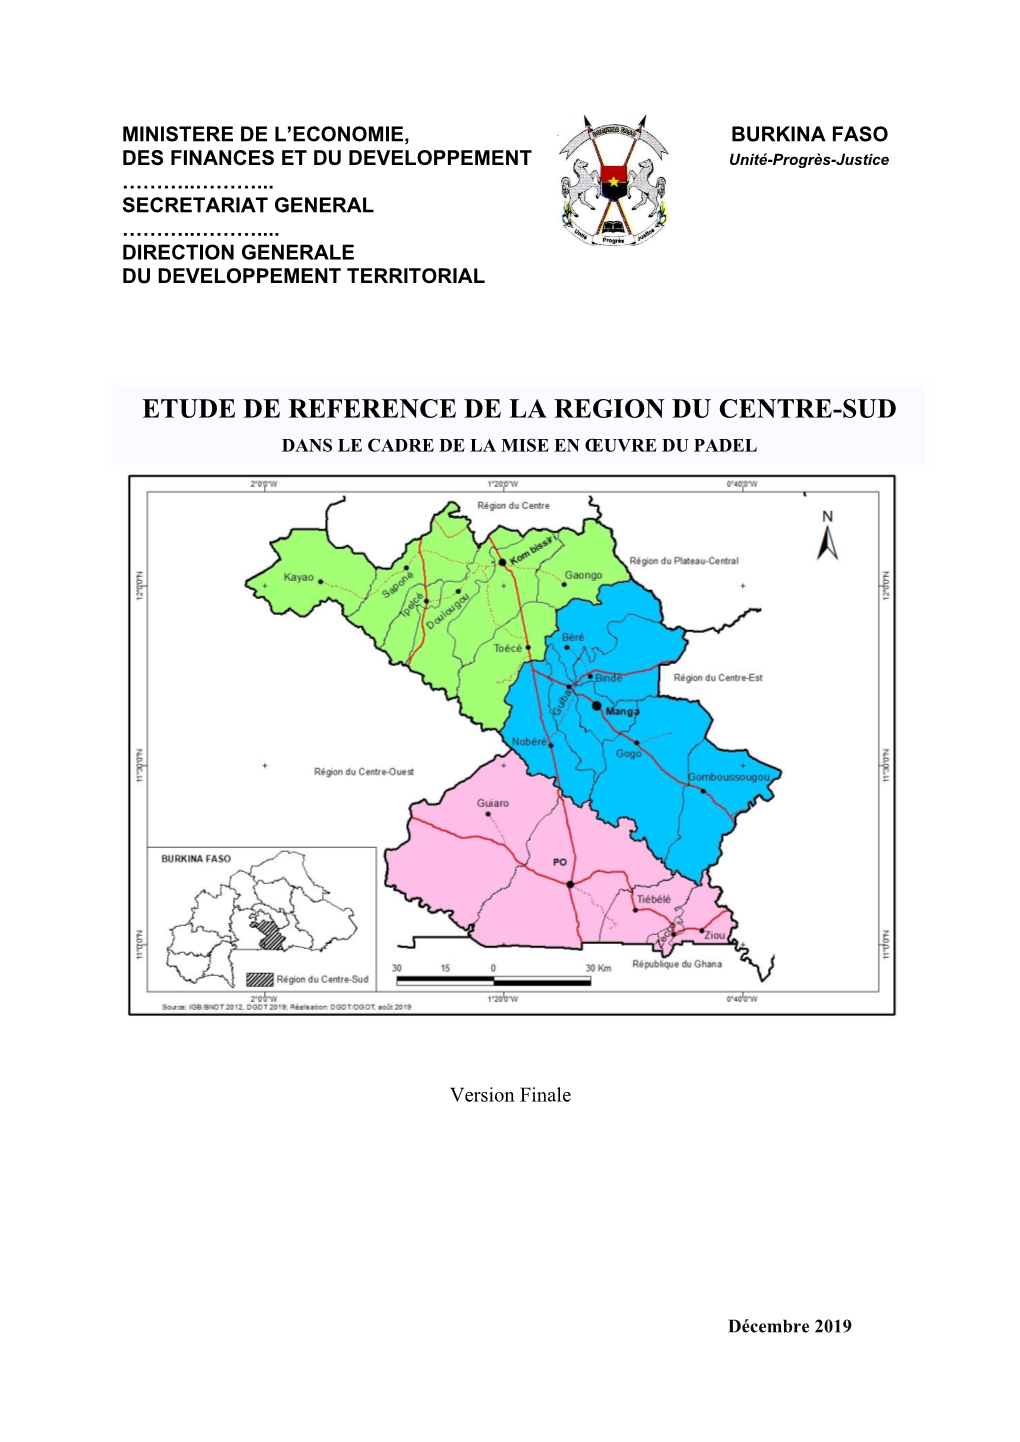 Etude De Reference De La Region Du Centre-Sud Dans Le Cadre De La Mise En Œuvre Du Padel